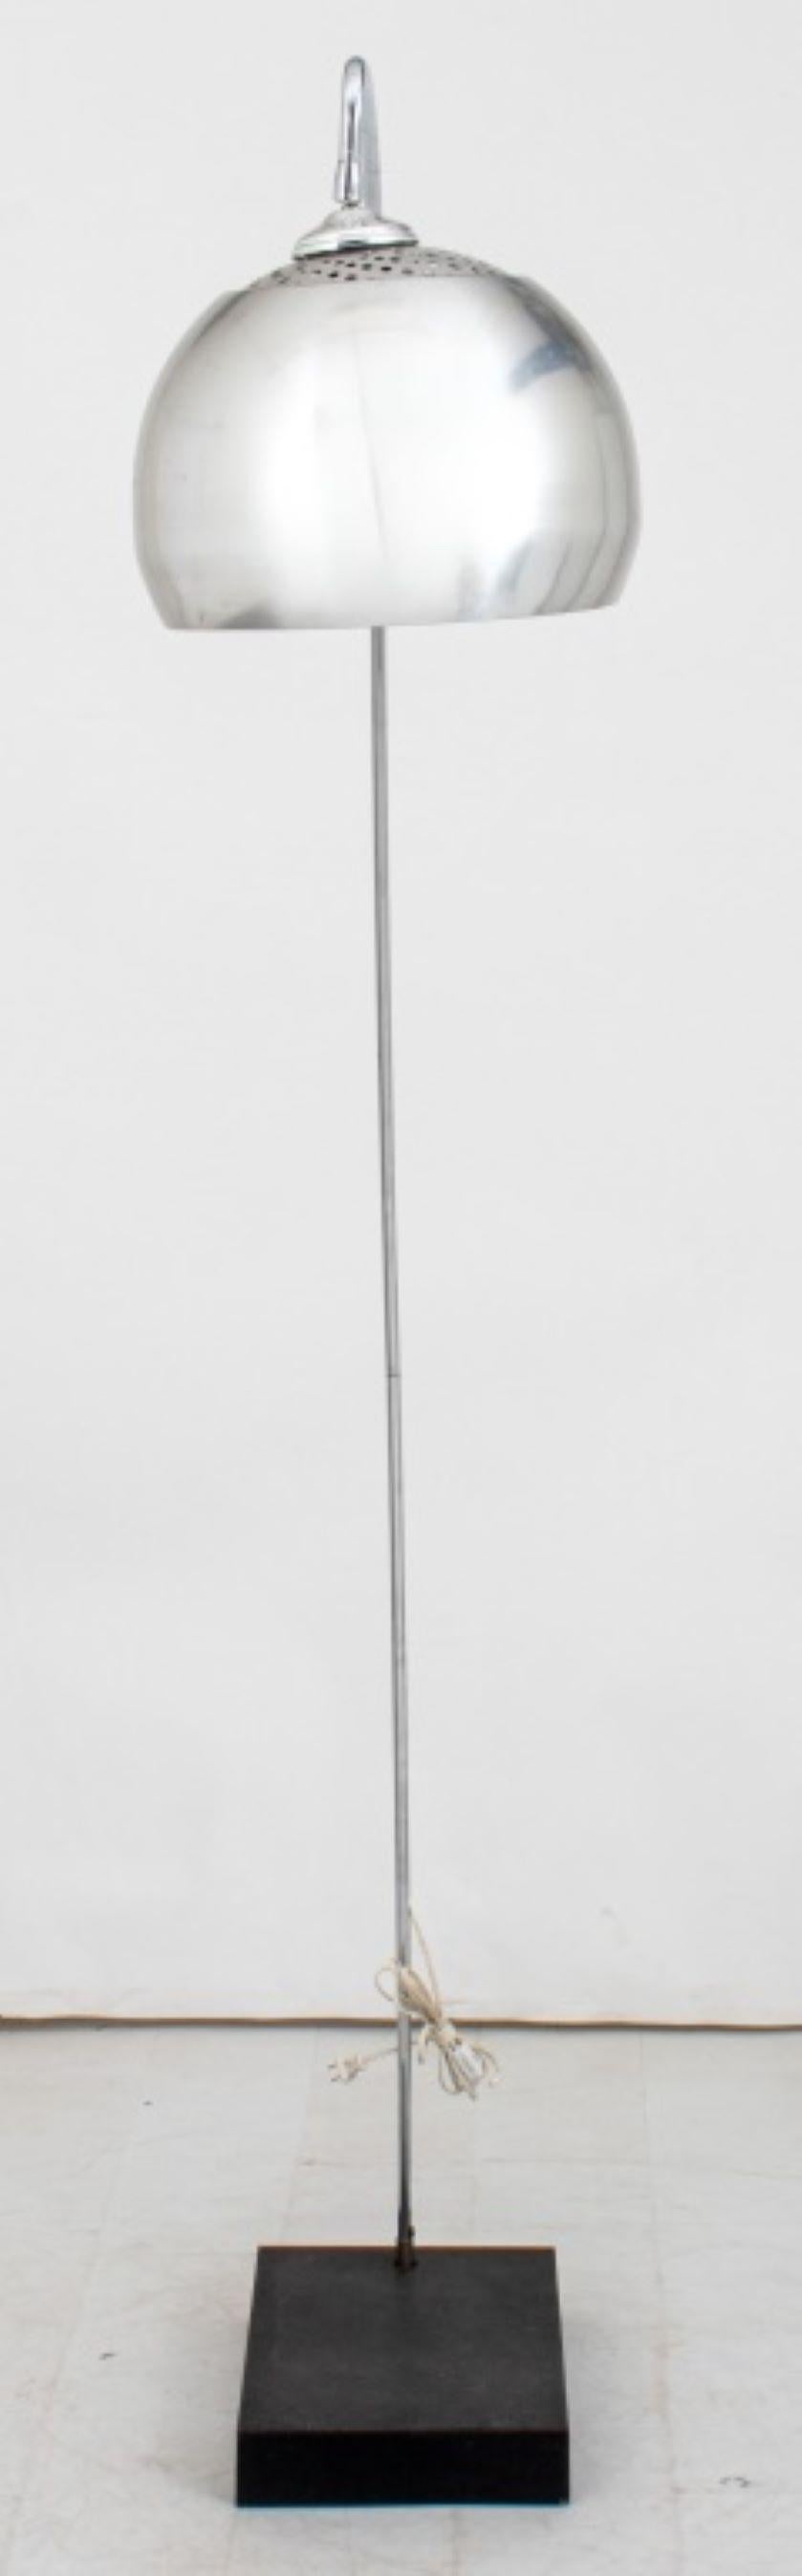 Lampadaire sur pied arc moderniste en chrome. 74